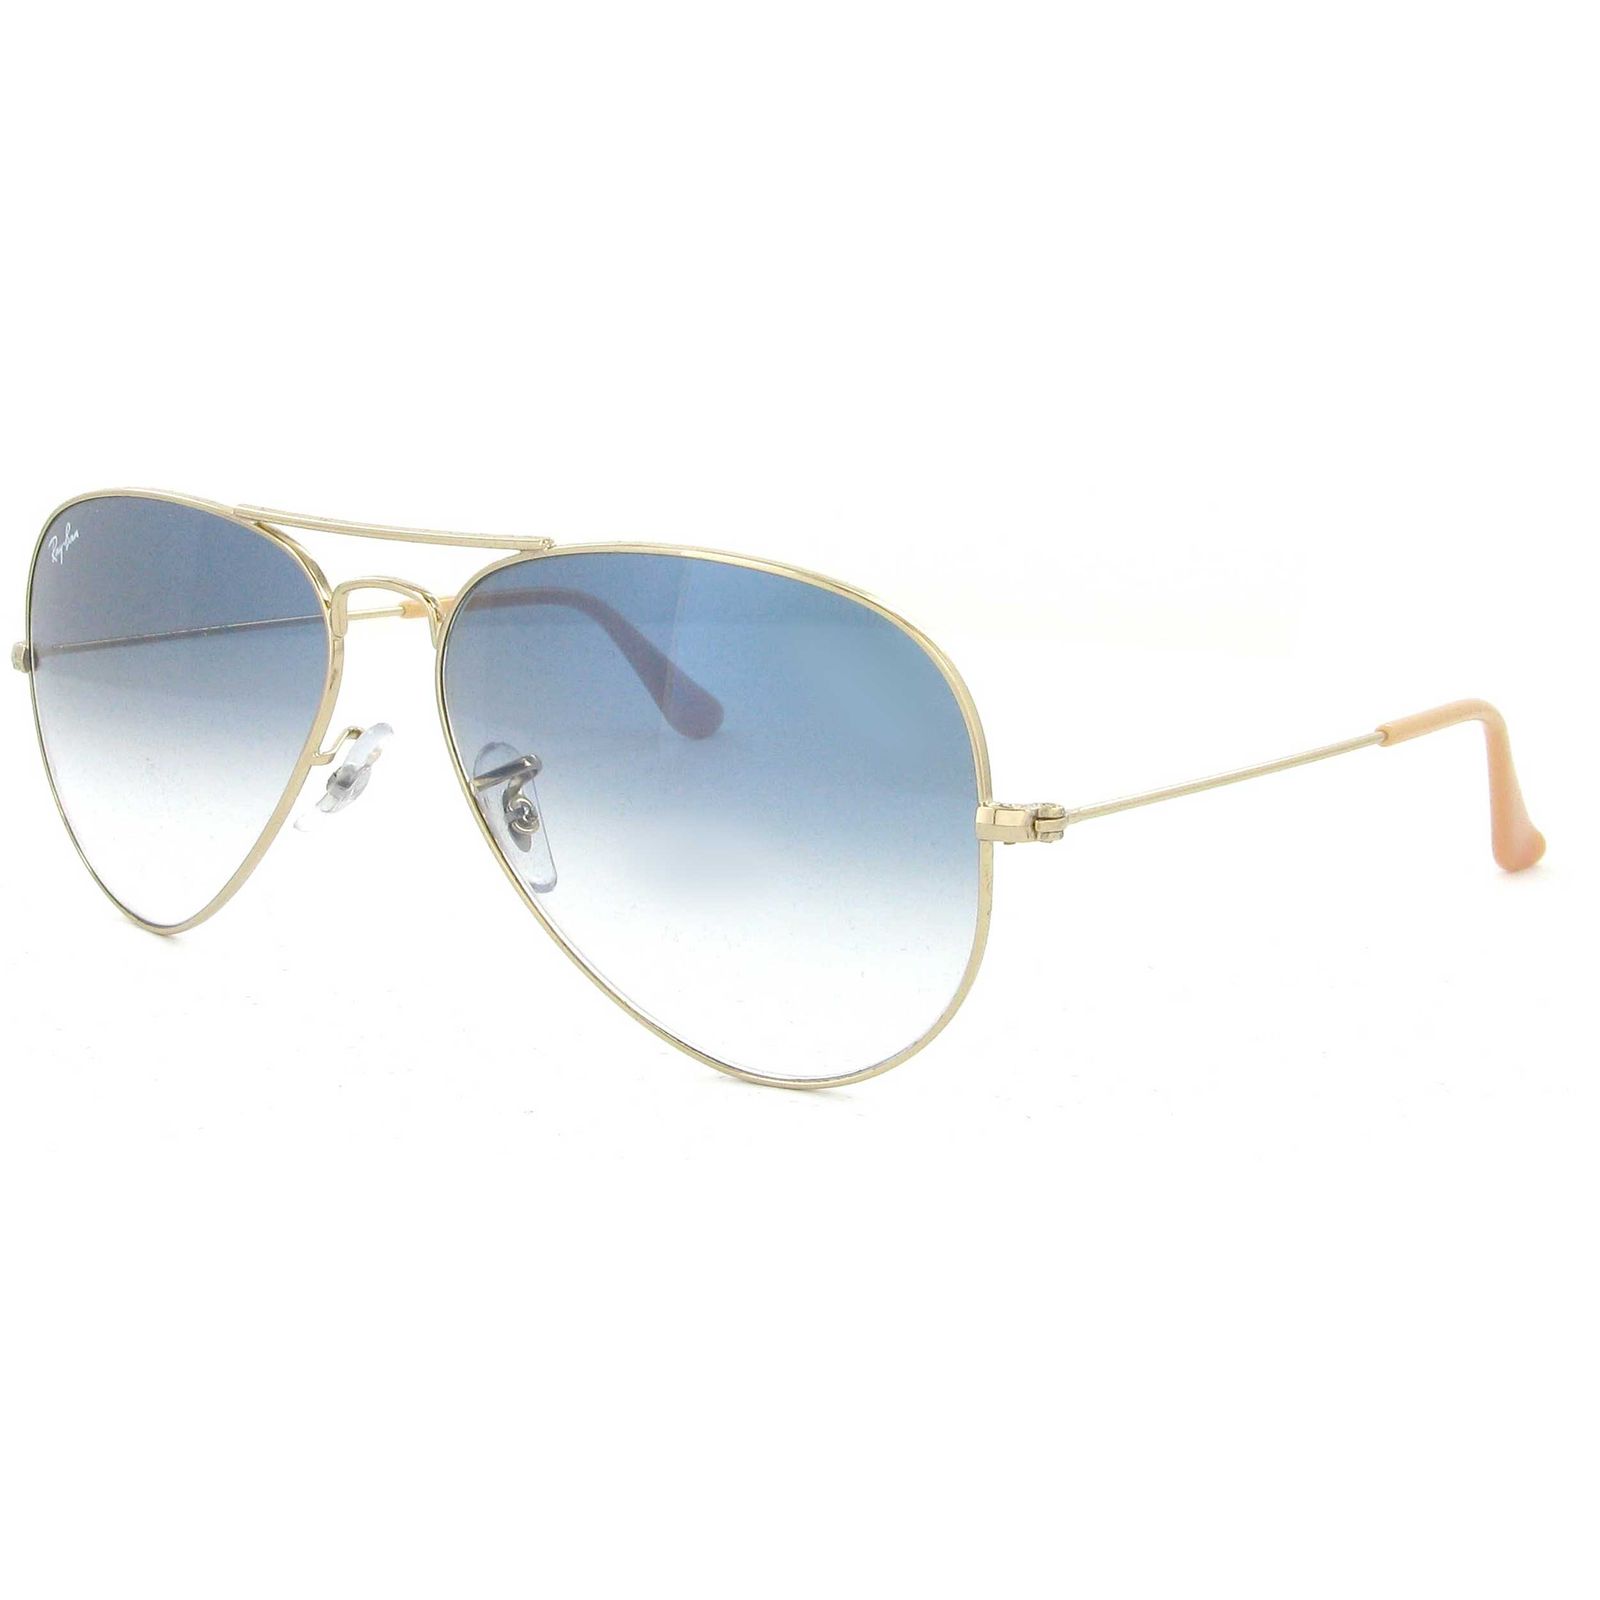 عینک آفتابی ری بن مدل 3025-001/3F-58 - طلایی - 3